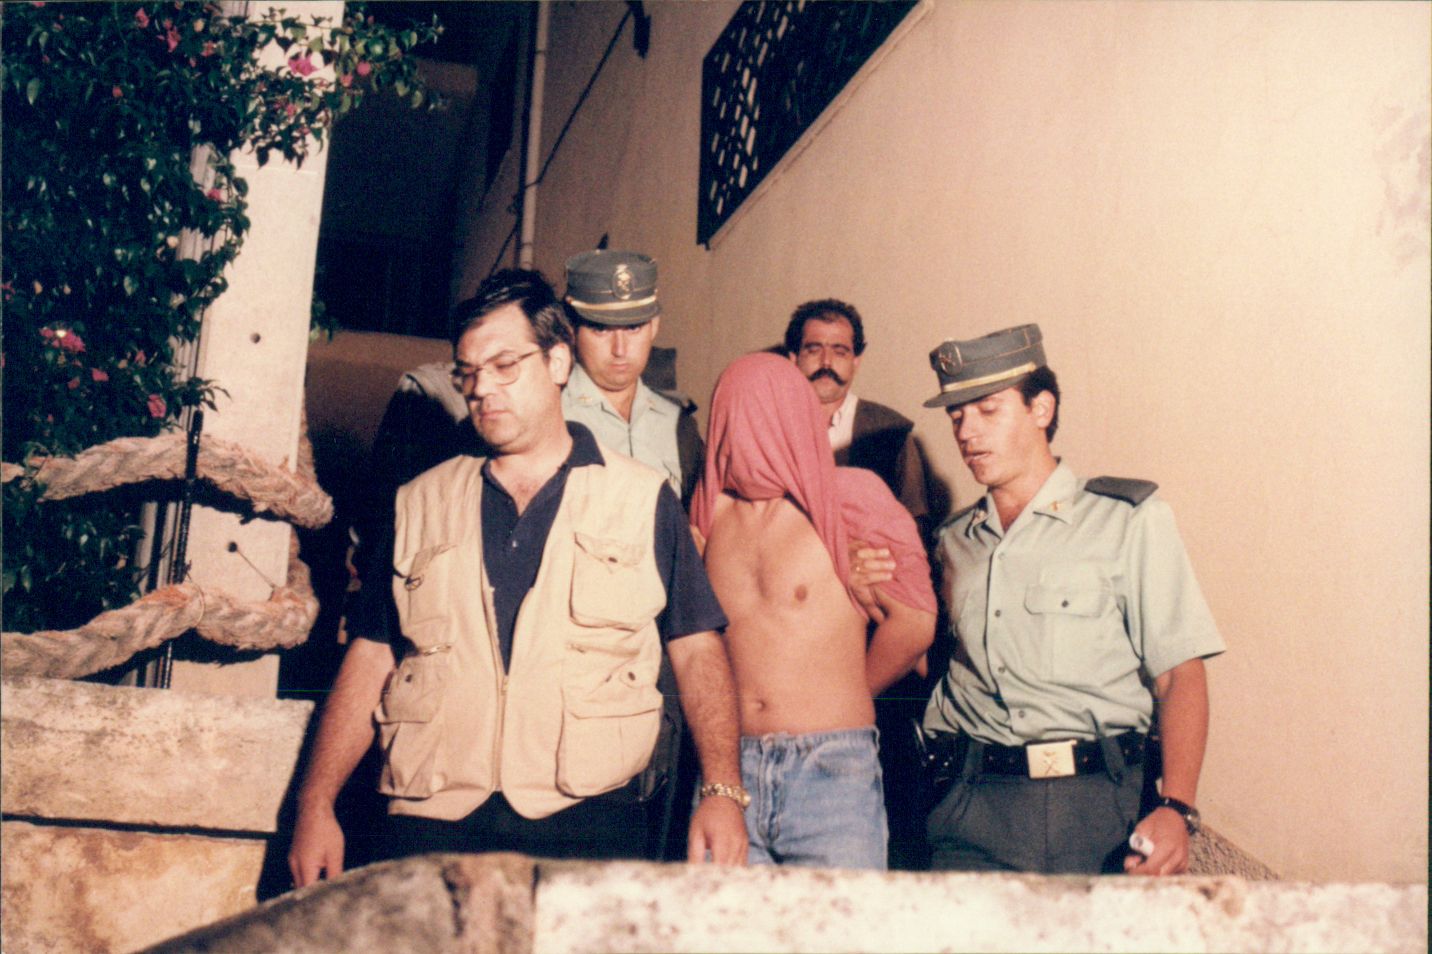 El crimen de la cuponera: el asesinato que horrorizó Mallorca en 1996, en imágenes